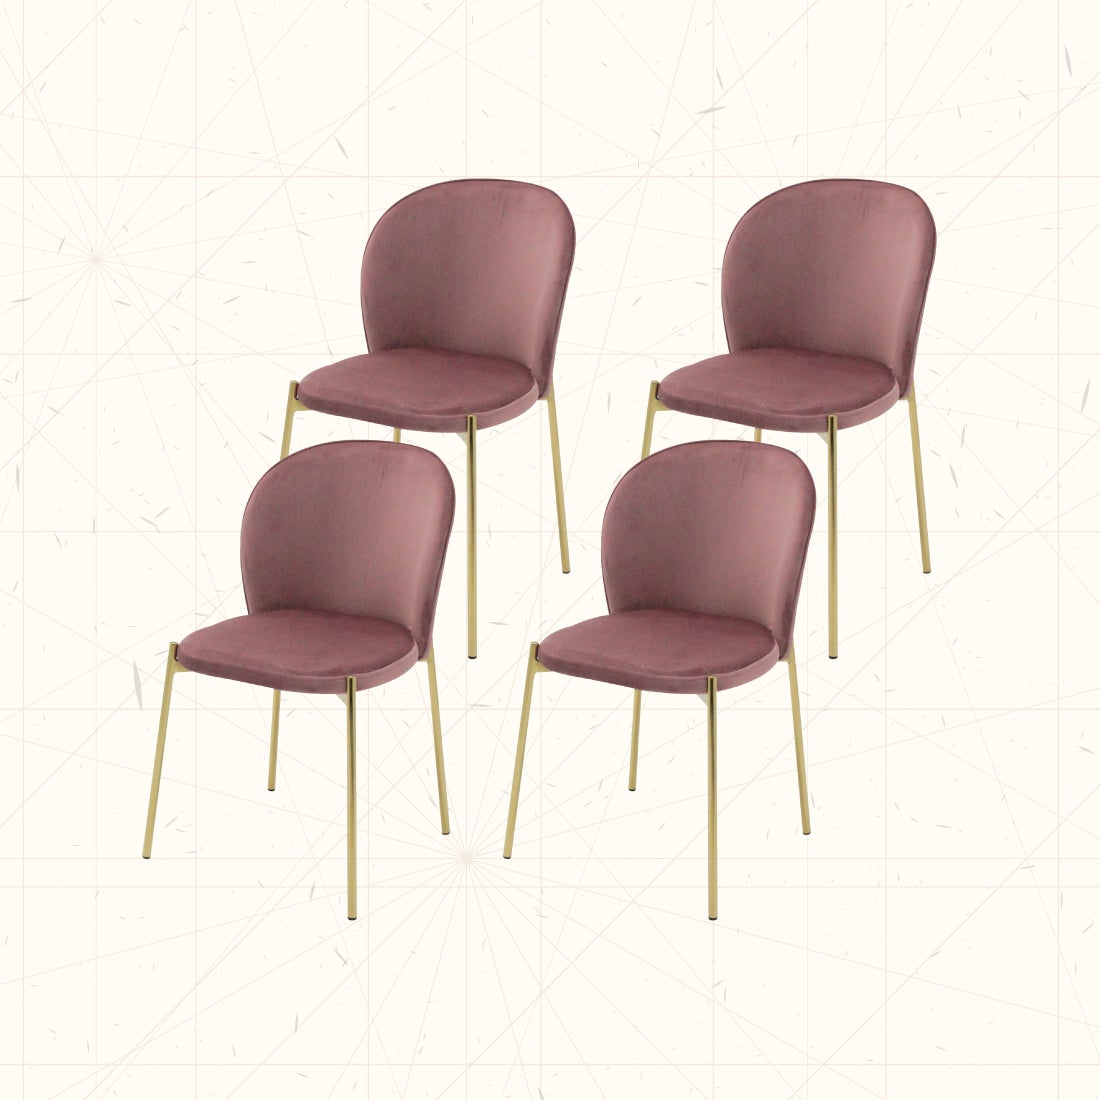 เซ็ตเก้าอี้ 4 ตัว รุ่น Tran สีชมพู01